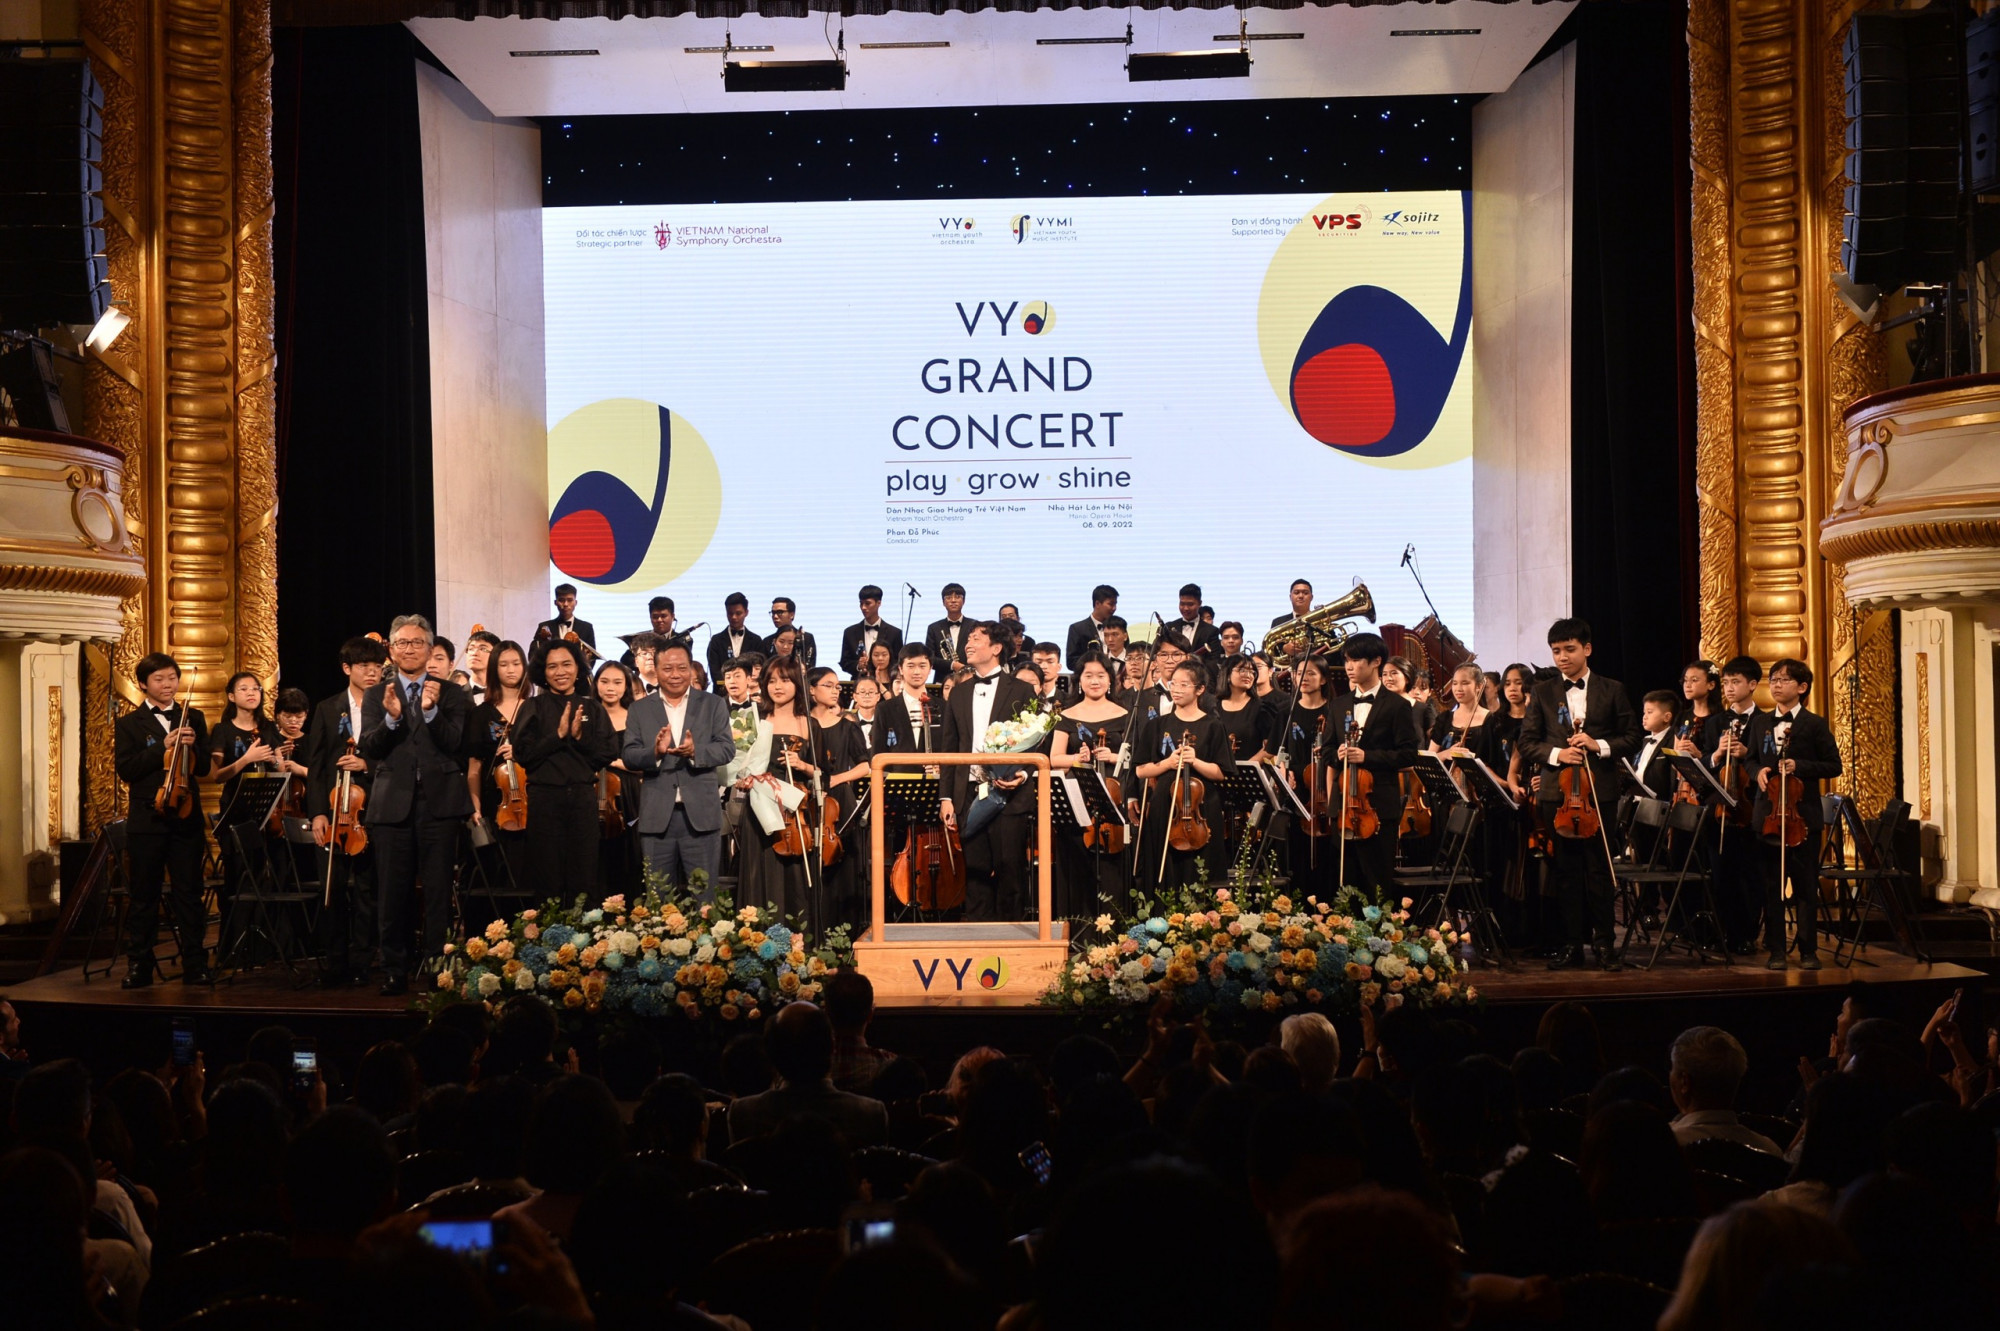 Toàn bộ chương trình được tổ chức miễn phí bởi VYMI trong một hợp tác chiến lược cùng Dàn nhạc Giao Hưởng Việt Nam để mang tới những không gian âm nhạc cởi mở, thân thiện với tất cả mọi người không phân biệt độ tuổi, giới tính, trình độ, đóng góp tích cực vào chiến lược văn hóa đối ngoại quốc gia trong thời kỳ toàn cầu hóa và hội nhập quốc tế sâu rộng.